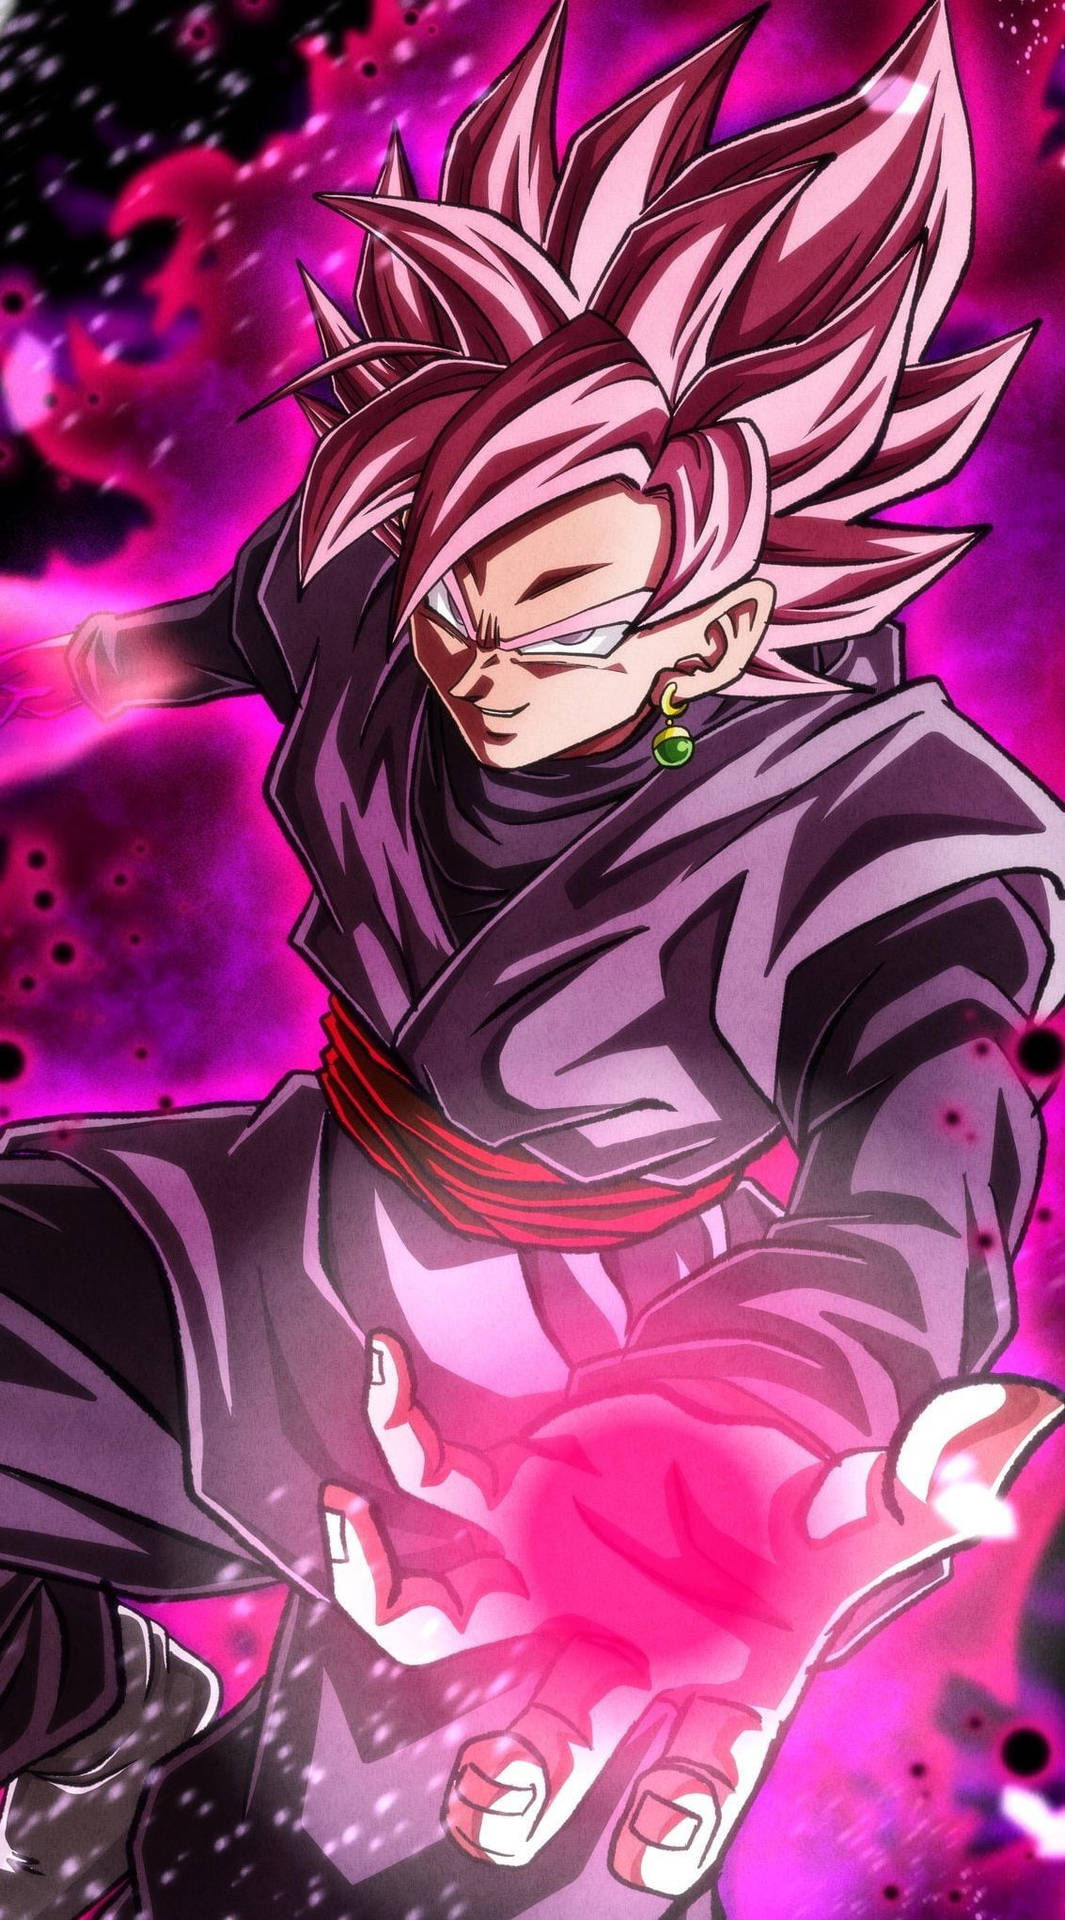 Khám phá hình ảnh Goku Black Rose siêu đẹp với sức mạnh vô song! Để đánh bại những kẻ thù hung ác, Goku Black Rose sẽ sử dụng sức mạnh của mình để trở thành một chiến binh vô cùng mạnh mẽ và kiên định.